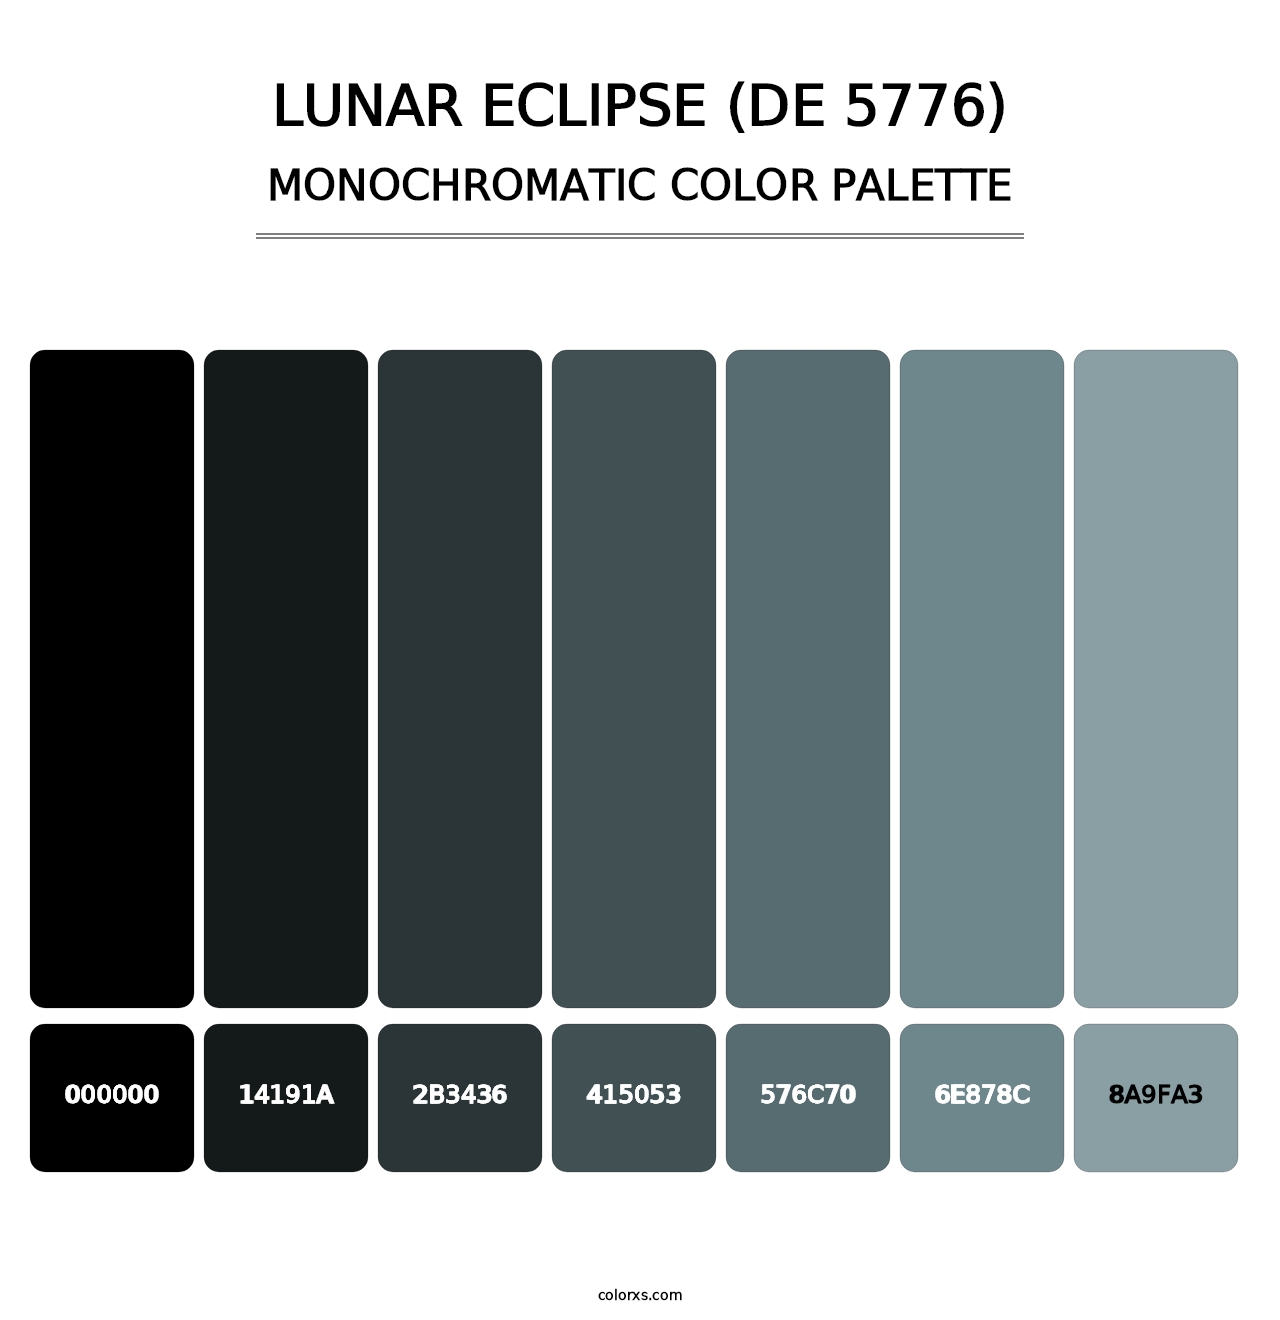 Lunar Eclipse (DE 5776) - Monochromatic Color Palette